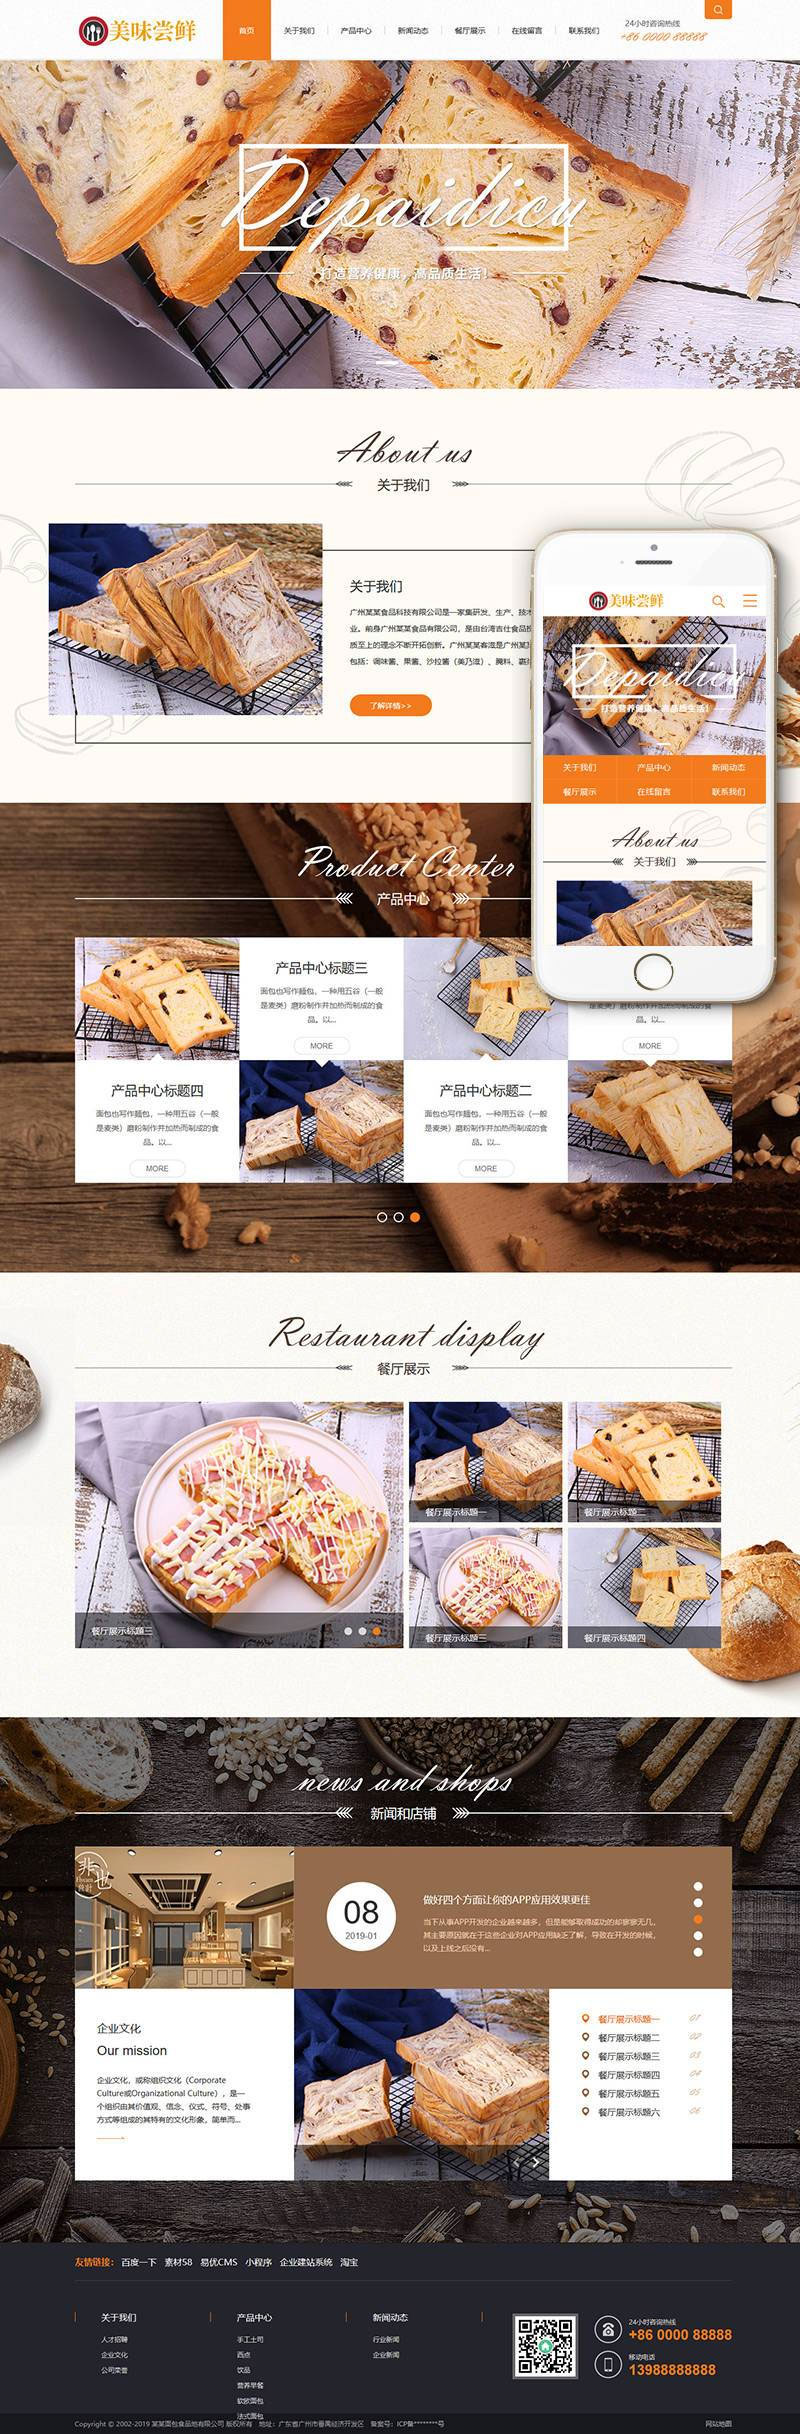 蛋糕面包食品公司网站源码 织梦dedecms模板 (带手机移动端)插图源码资源库